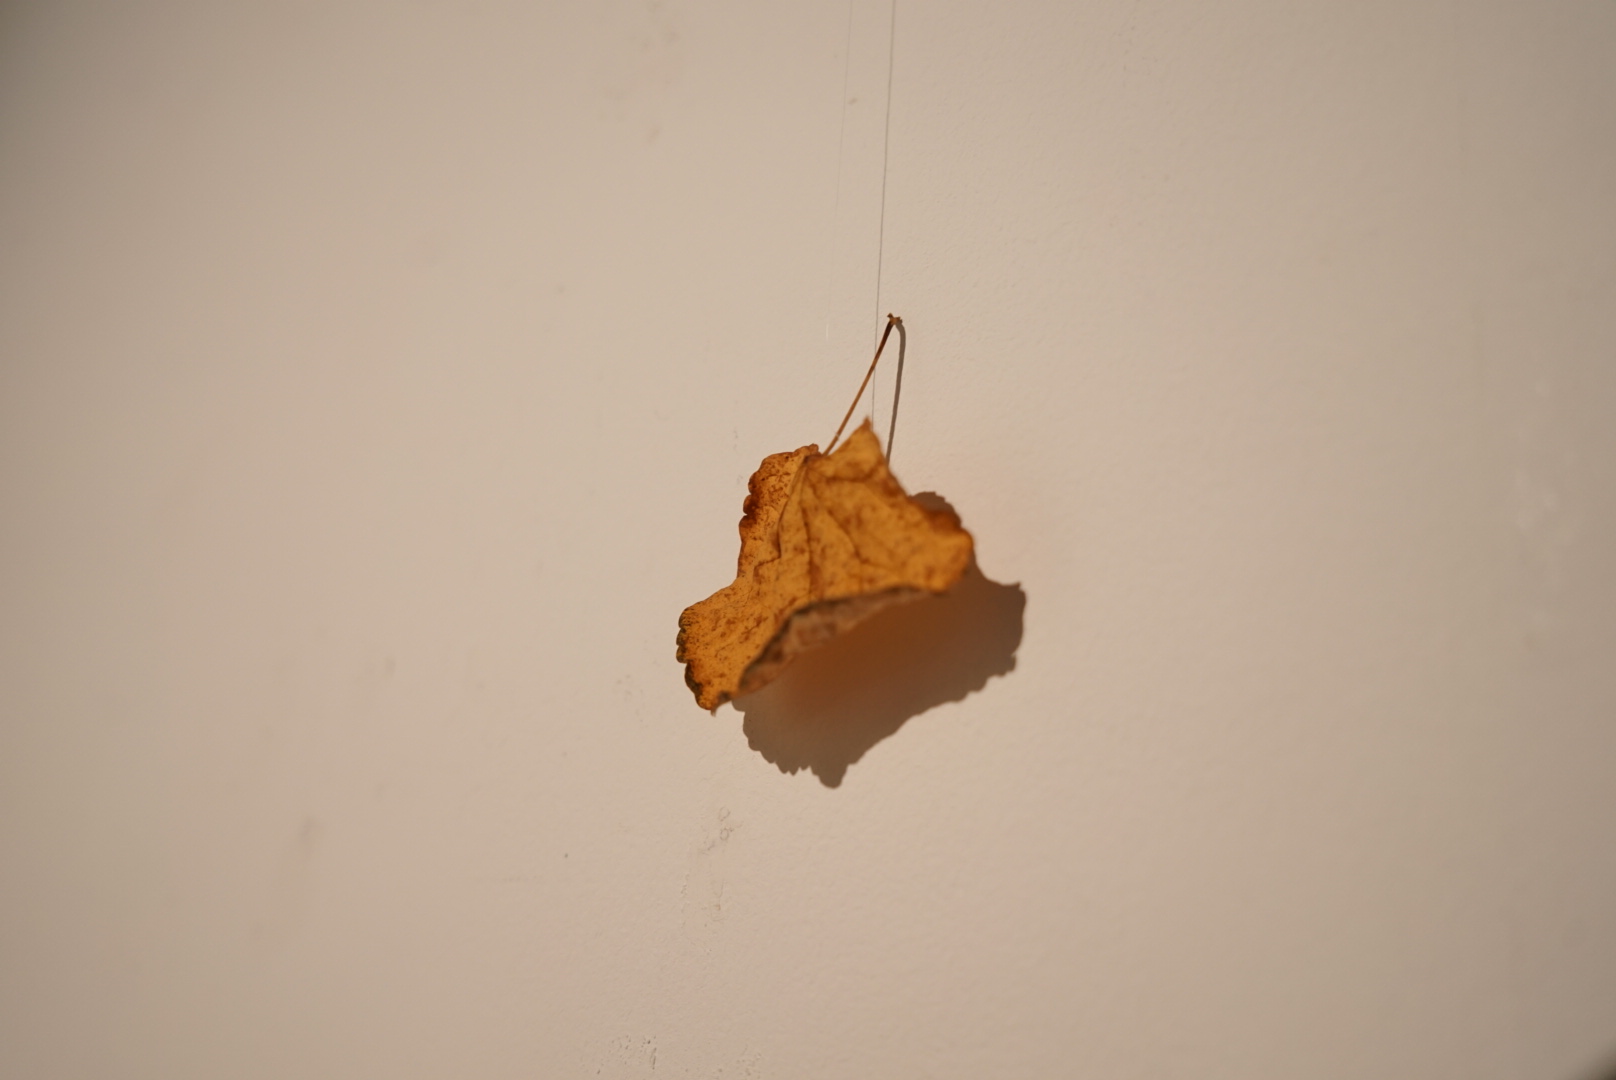 untitled yet – a leaf falling down.